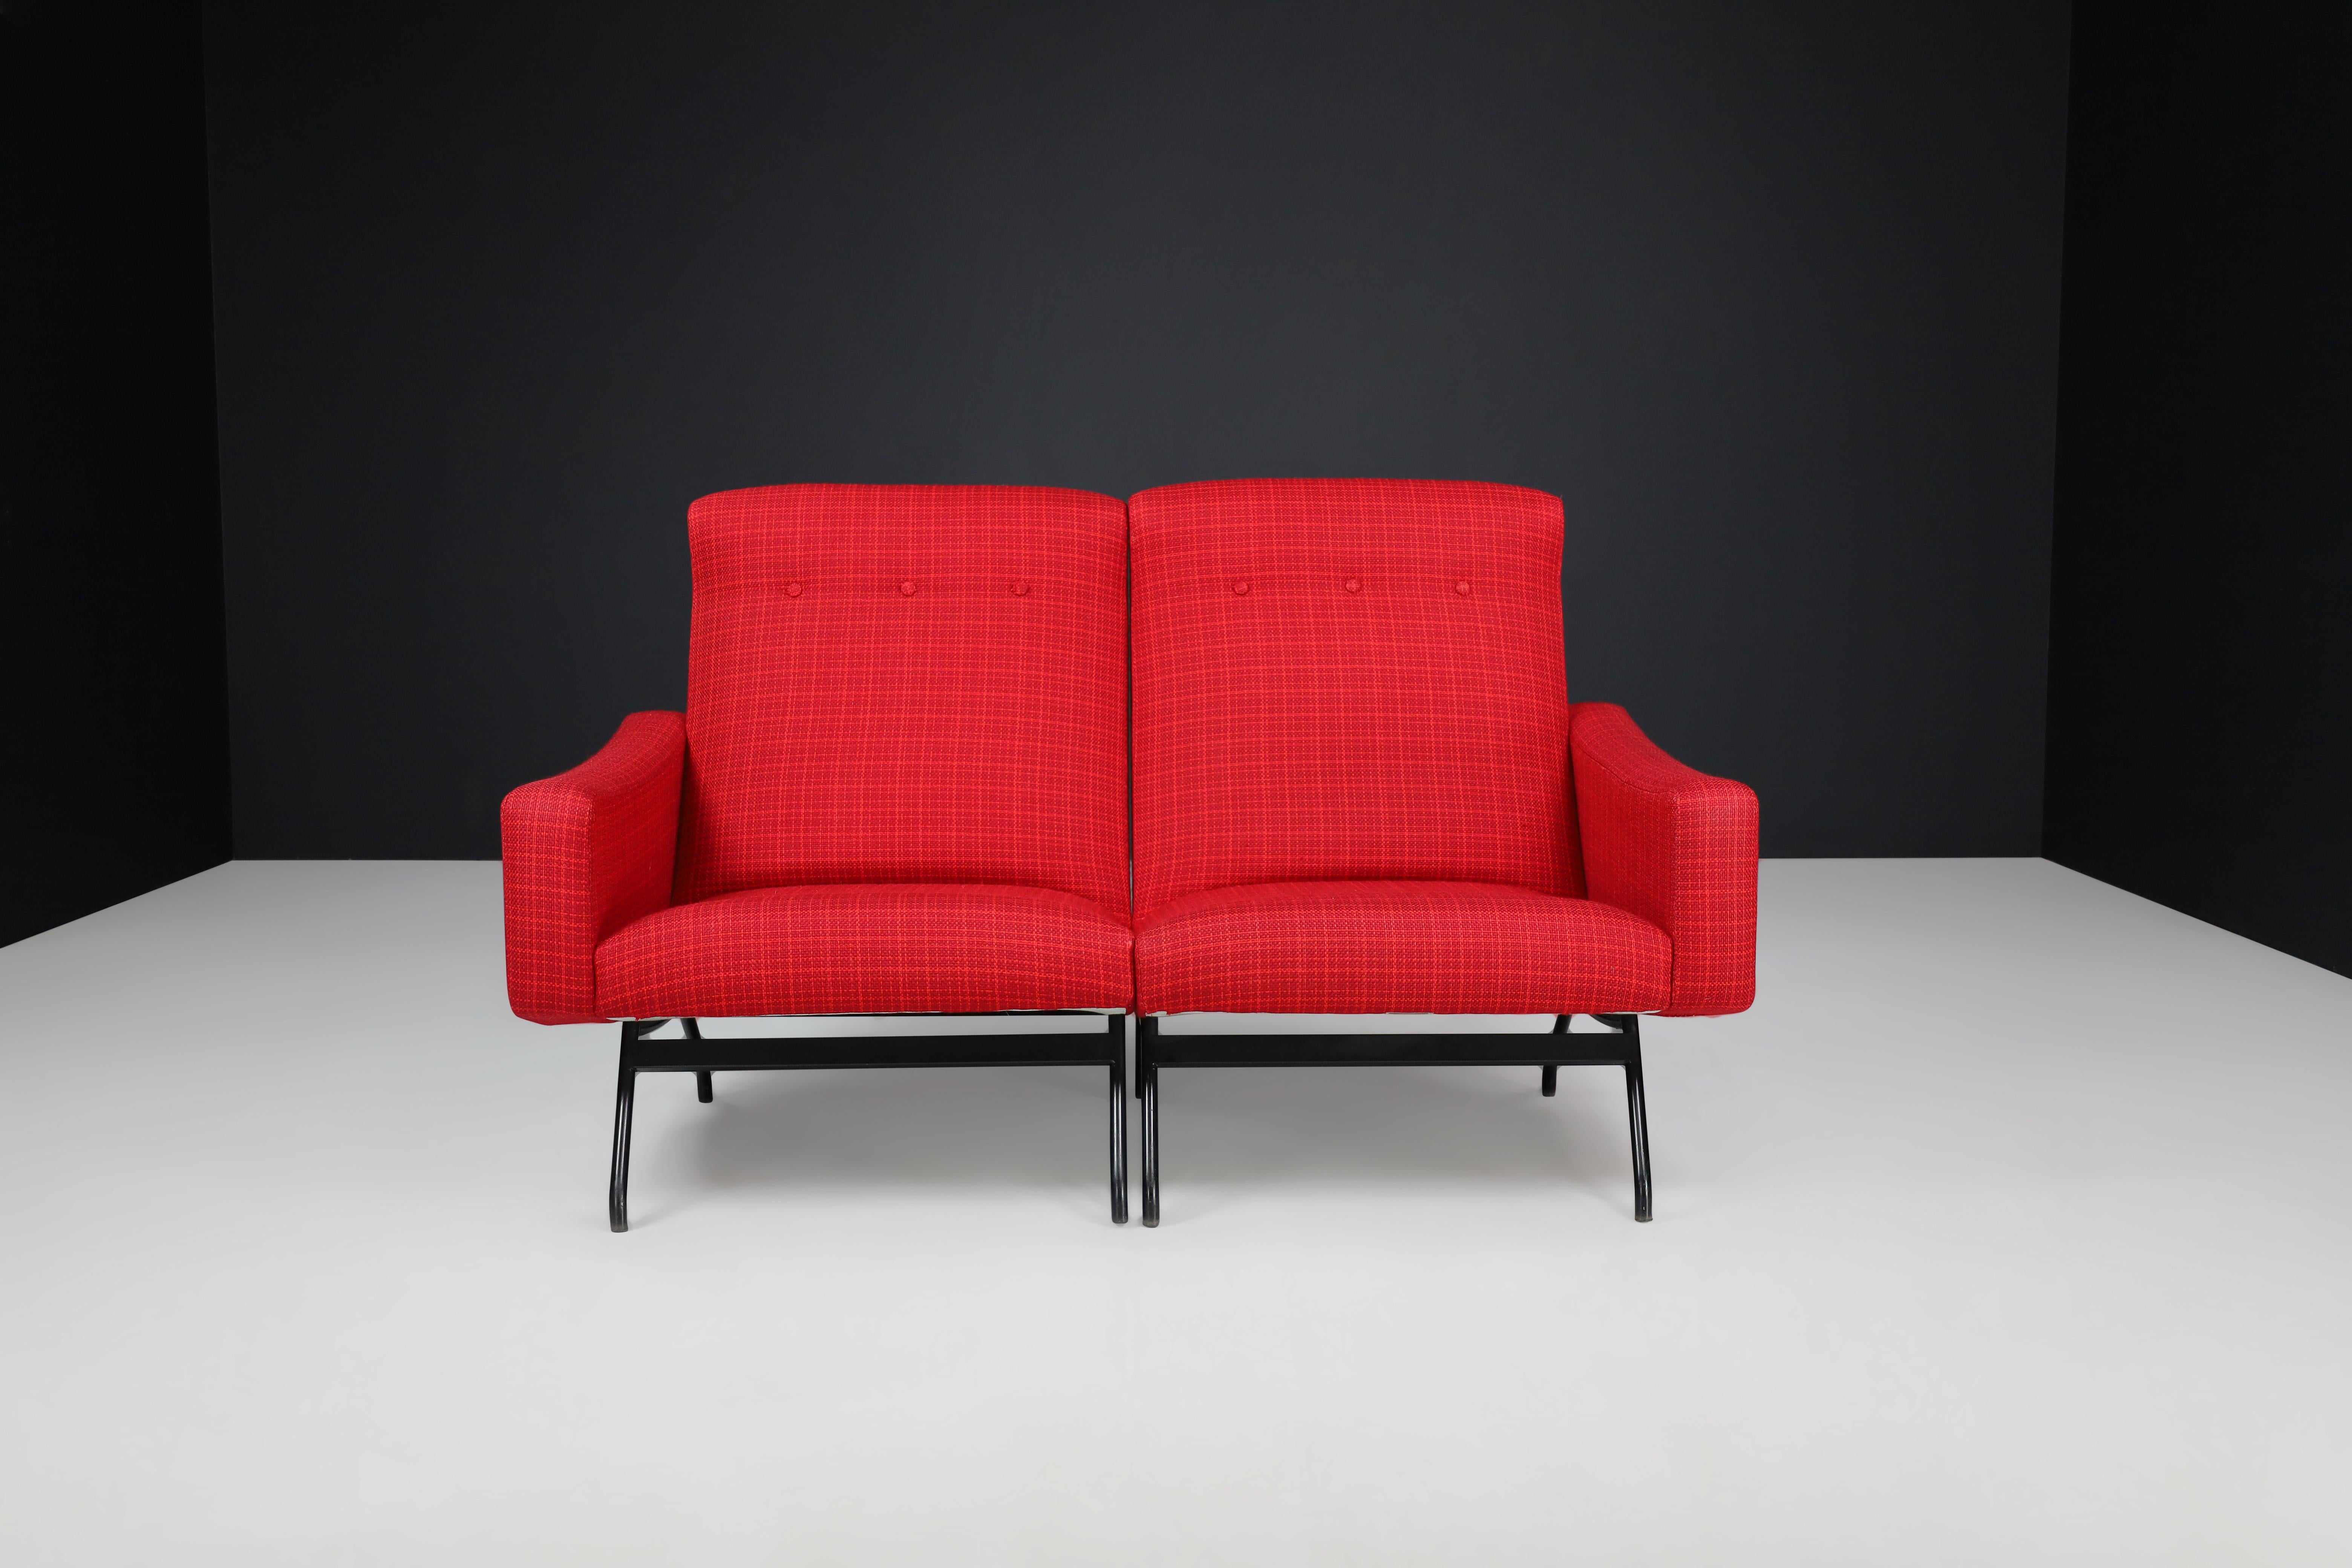 Joseph-Andre' Motte Sektionssofa Zweisitzer Rot Originalpolsterung Frankreich, 1950er Jahre
Dieses Set besteht aus zwei Sofas, die von Joseph-Andre' Motte in den 1950er Jahren in Frankreich entworfen und von Steiner hergestellt wurden. Die Sitze